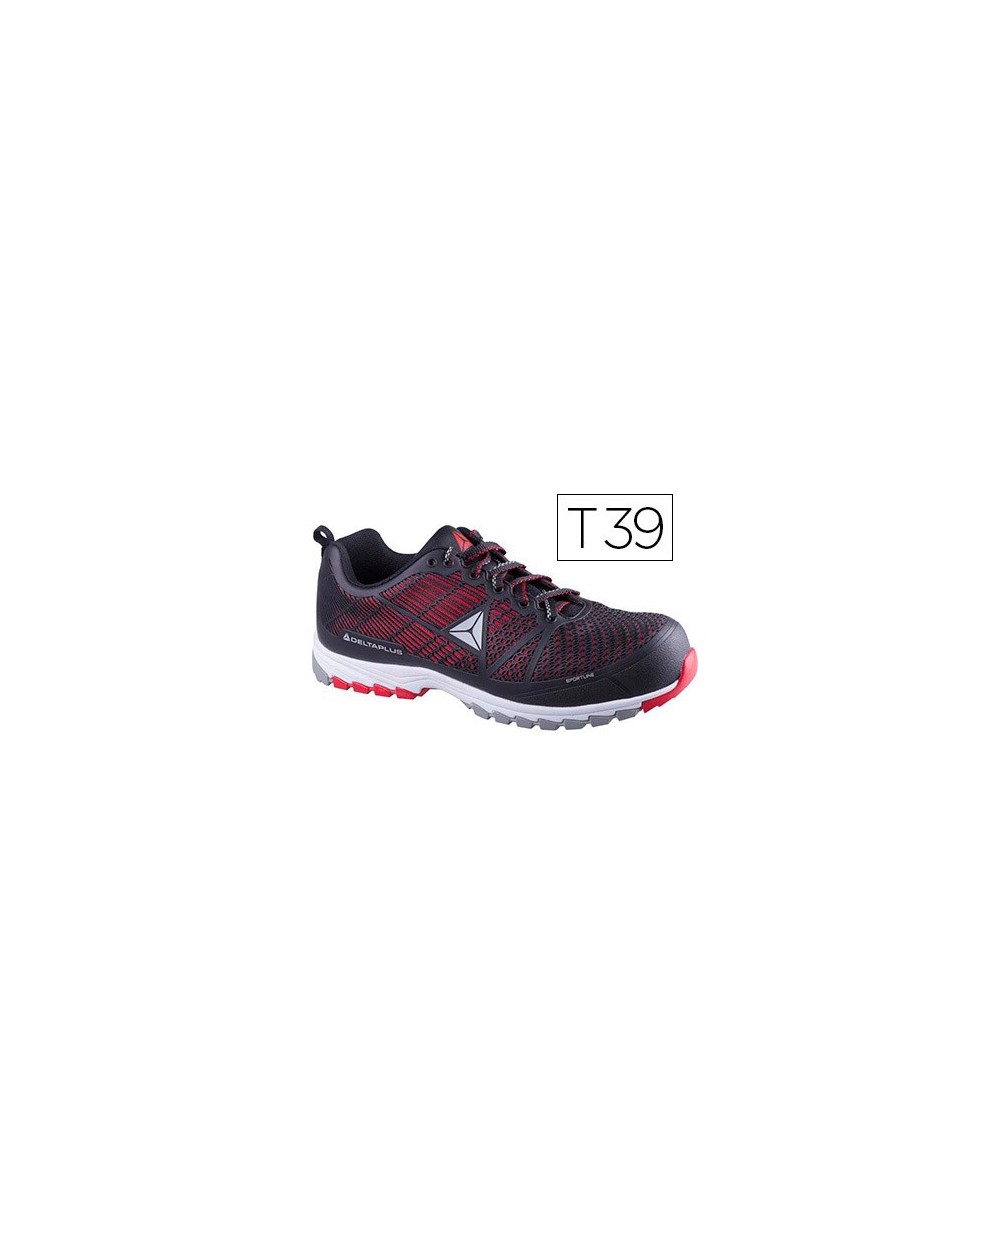 Zapatos de seguridad deltaplus de poliuretano y malla aireada s1p negro y rojo talla 39